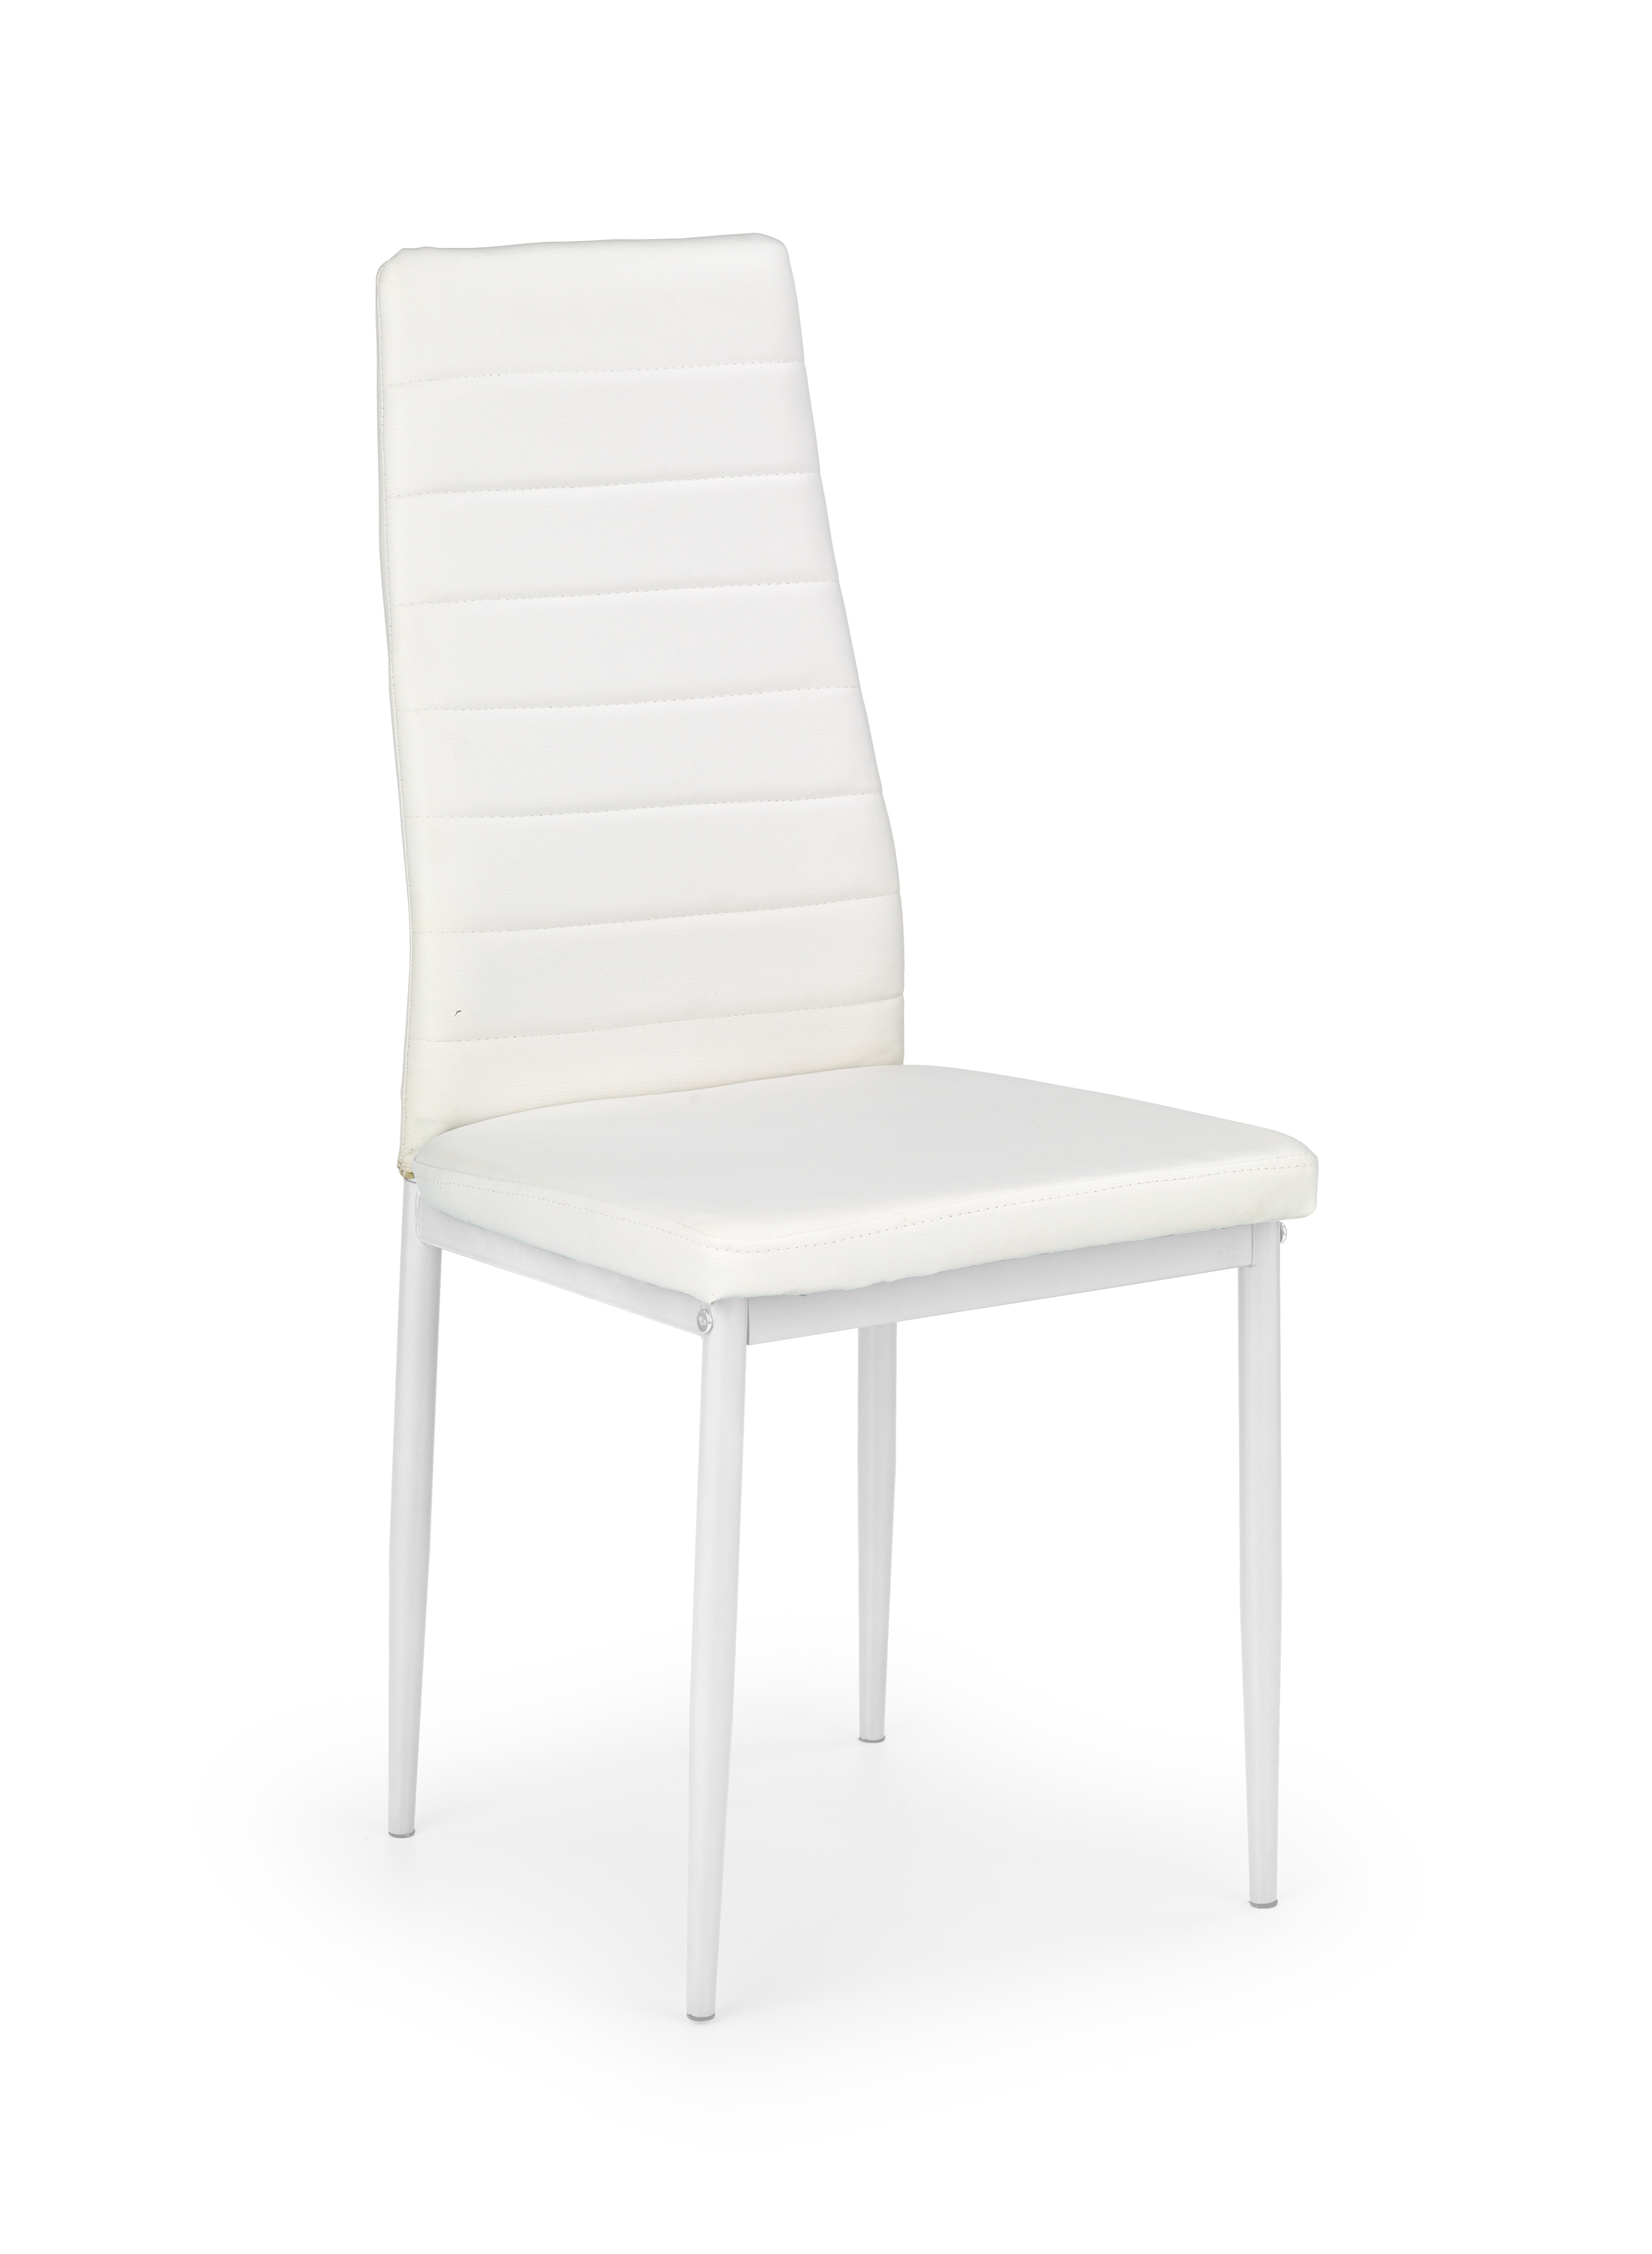 K70 krzesło biały